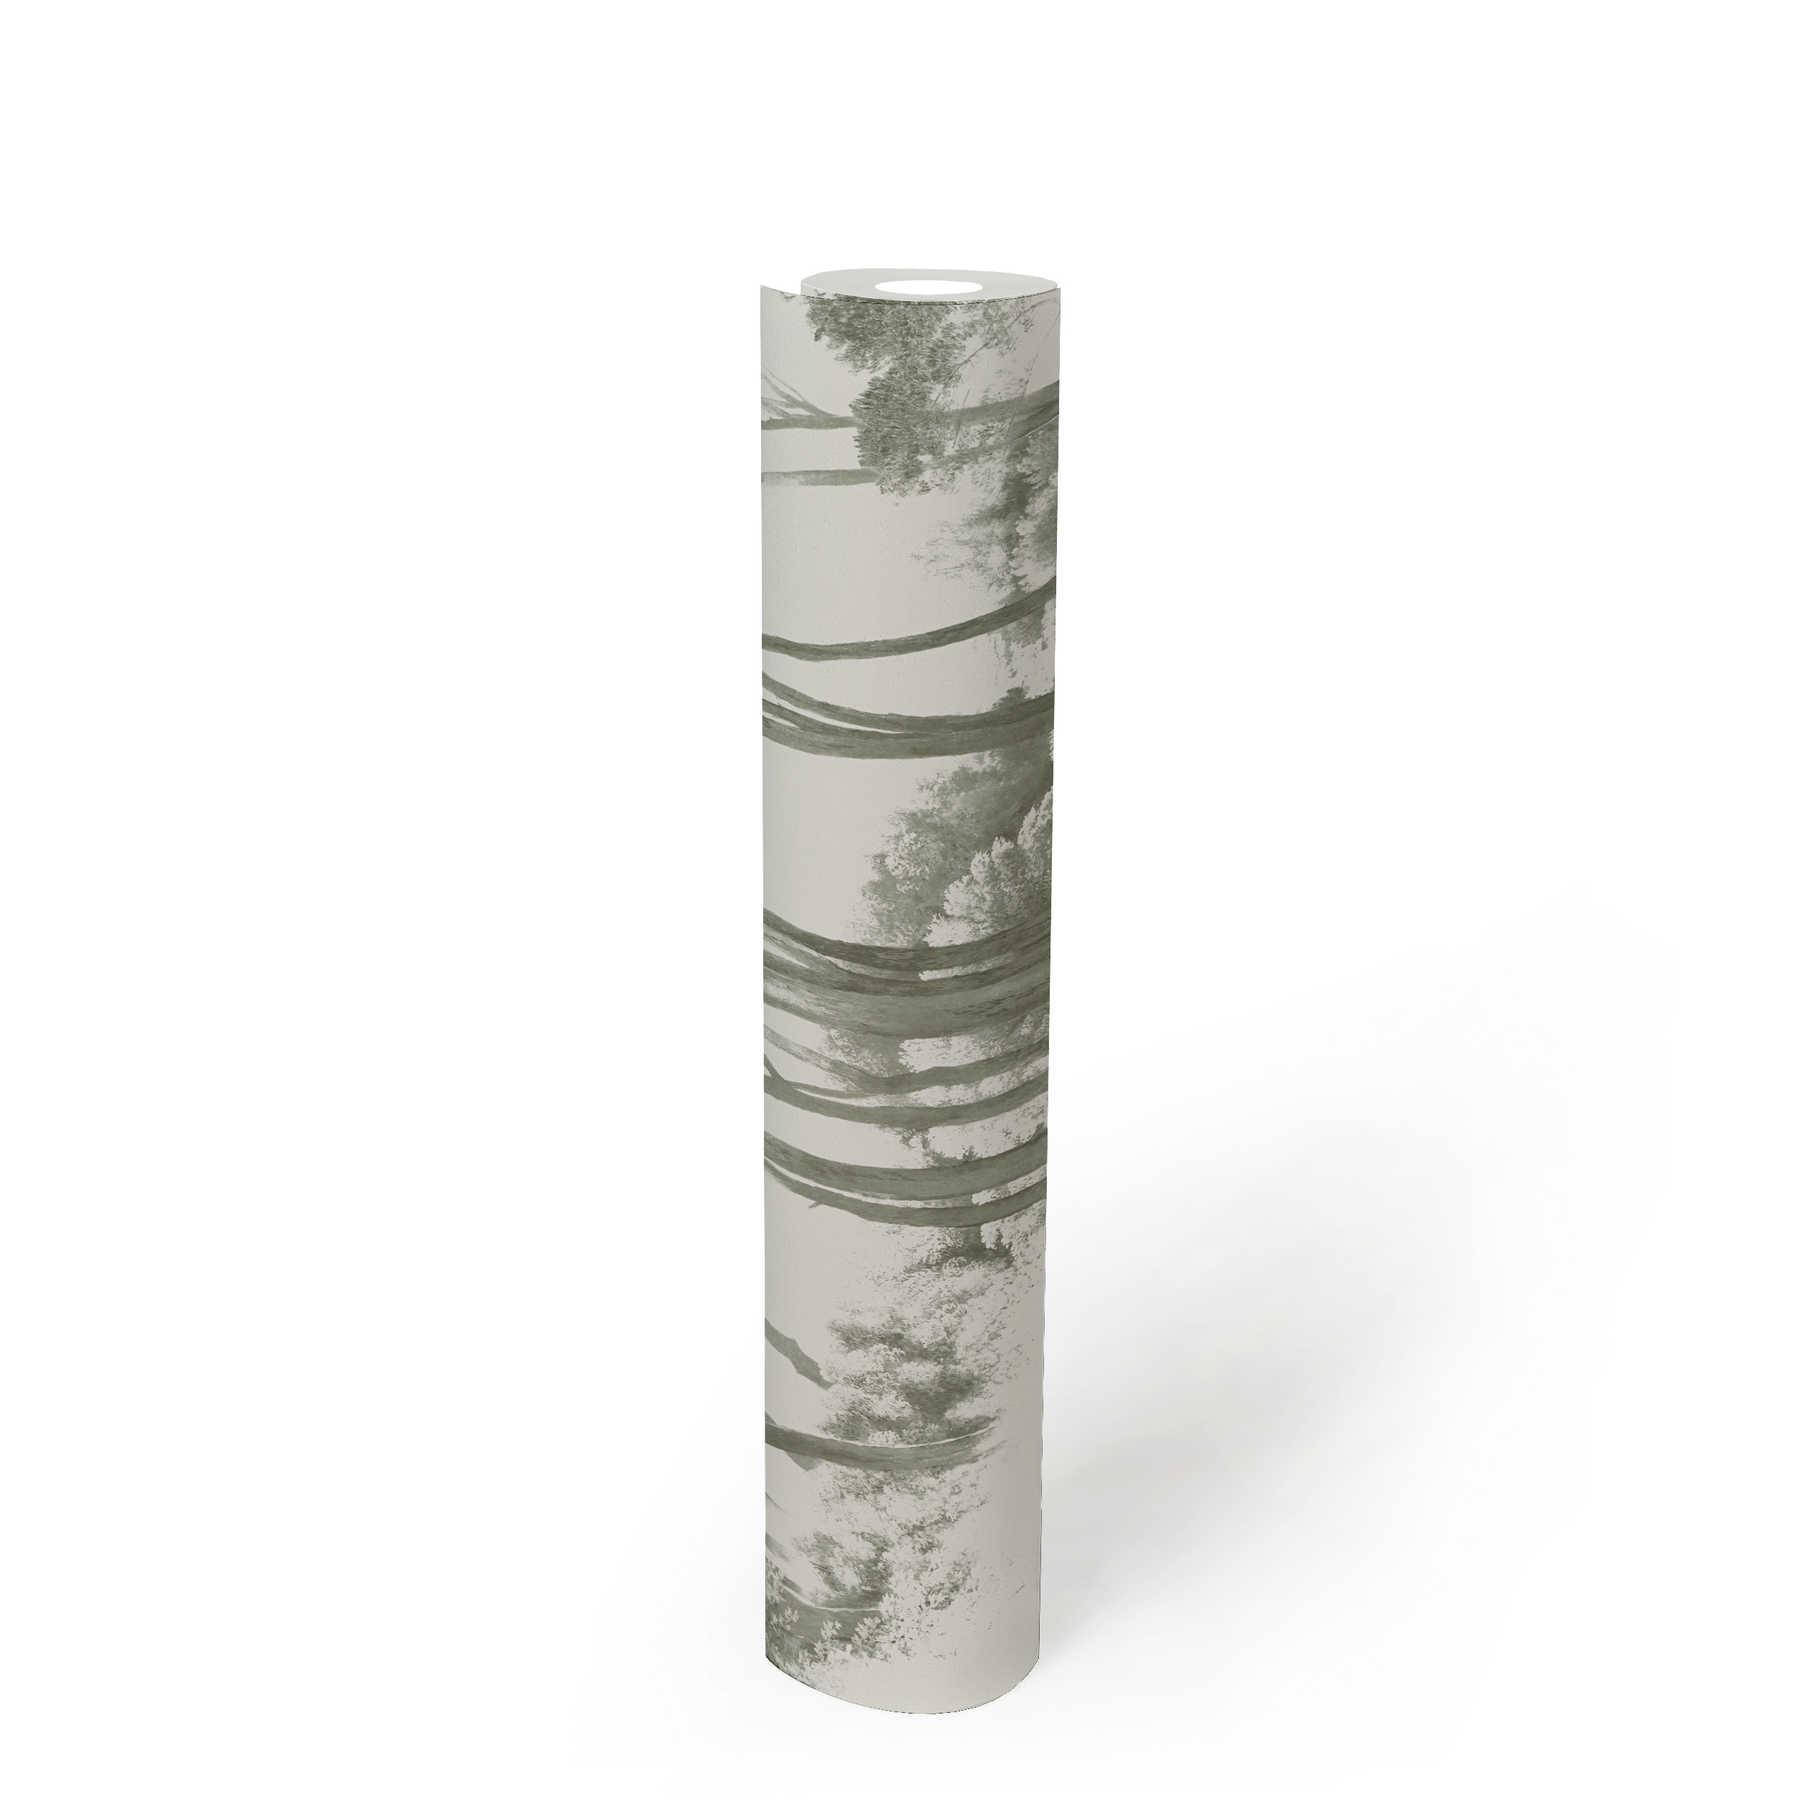             Tapete stilisierte Wald-Landschaft – Grün, Weiß
        